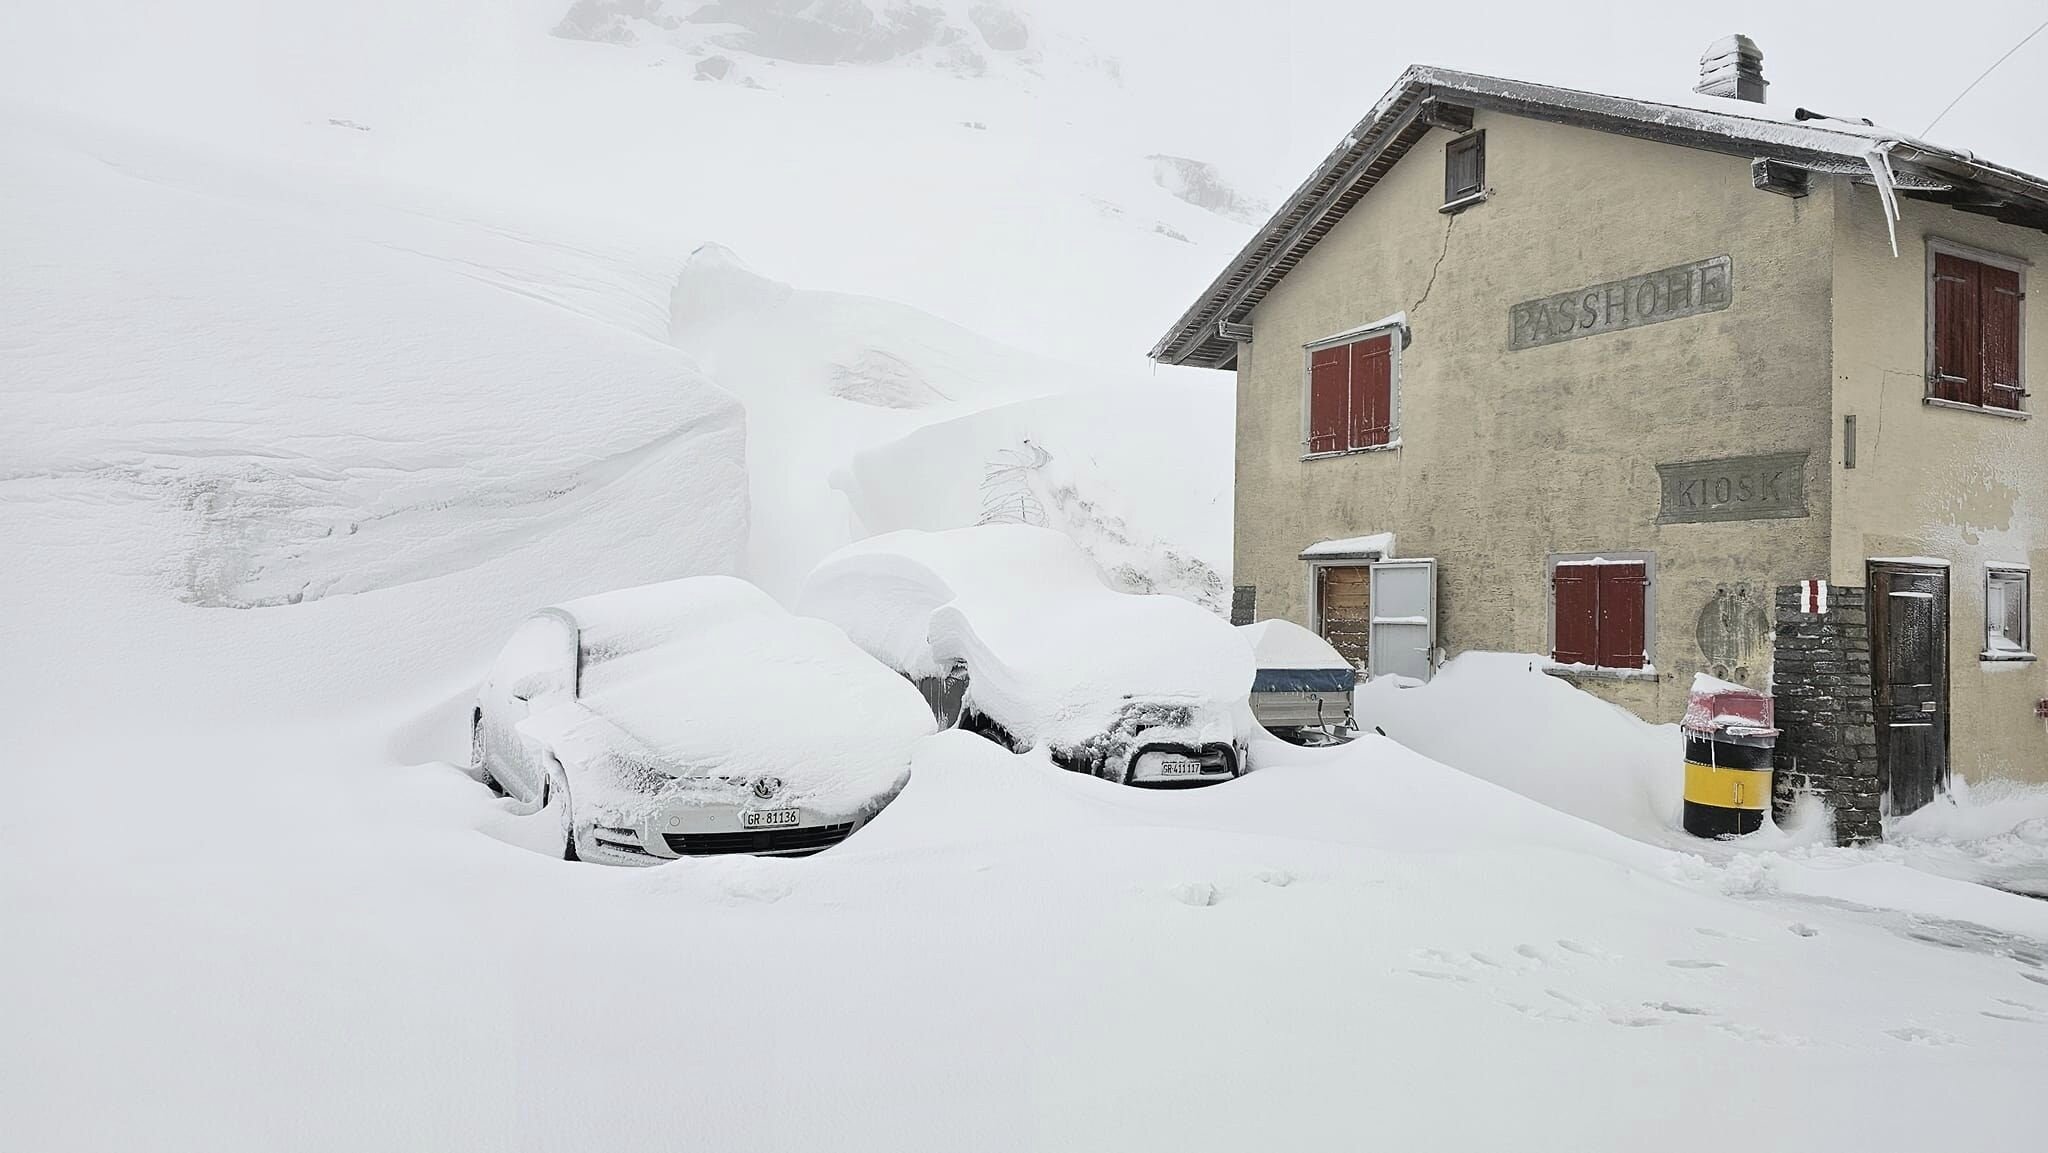 Svájc, Flüela-hágó, 2383 méter. Ma reggelre 24 óra alatt 59 cm hó hullott (Kép: Flüela Hospiz, Passhotel)